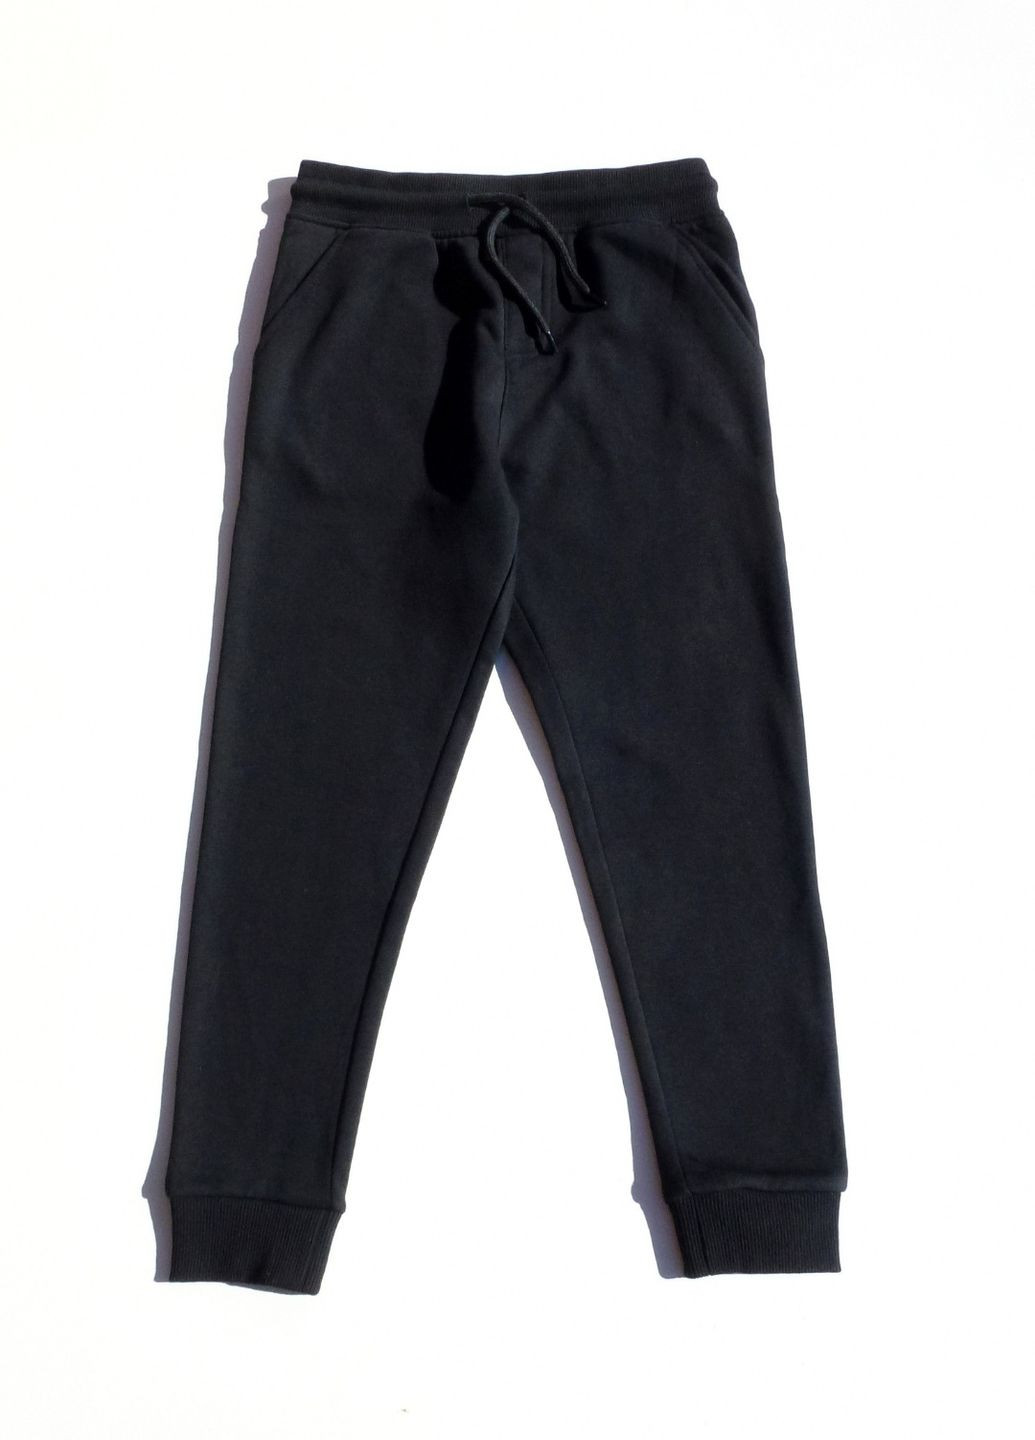 Спортивный костюм (худые+штаны) на флисе для мальчика, 122-128 см, 7-8 р. George (264028913)